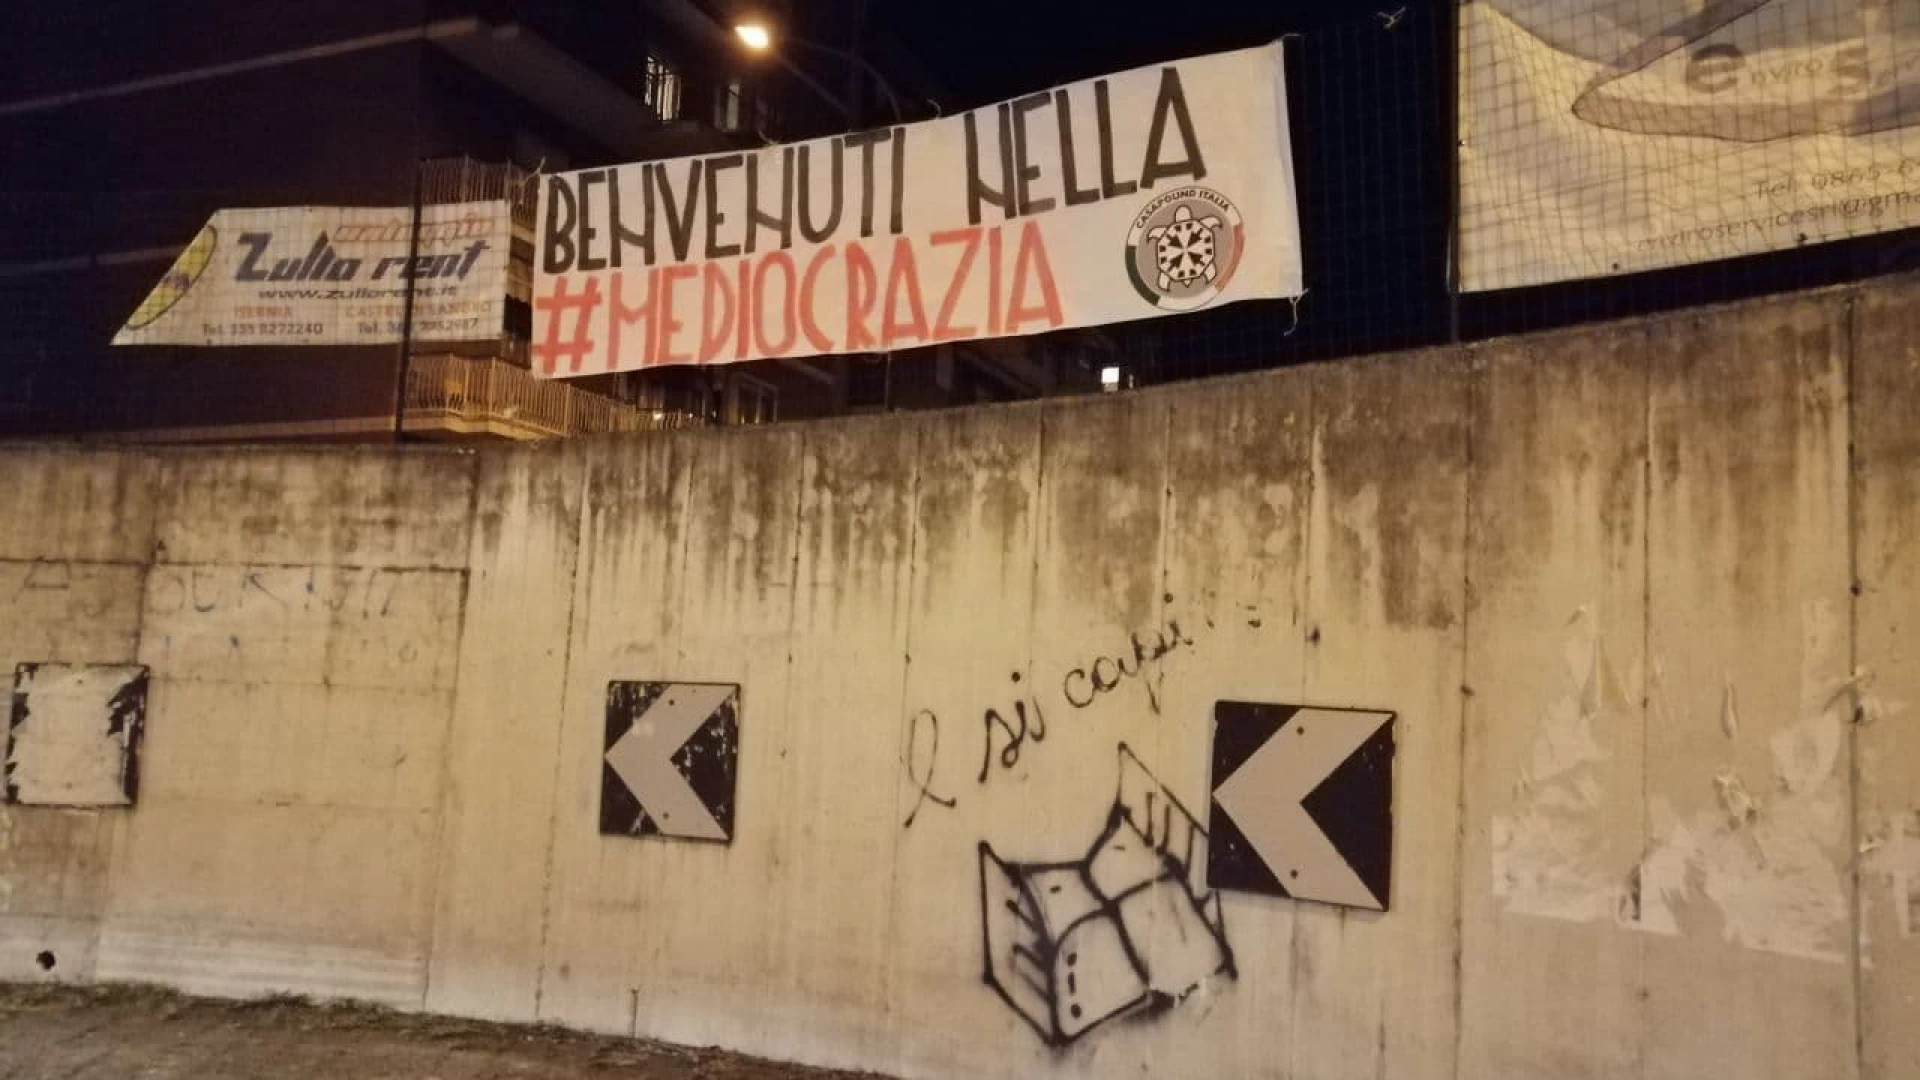 Governo, striscioni di CasaPound in tutta Italia: "benvenuti nella mediocrazia"